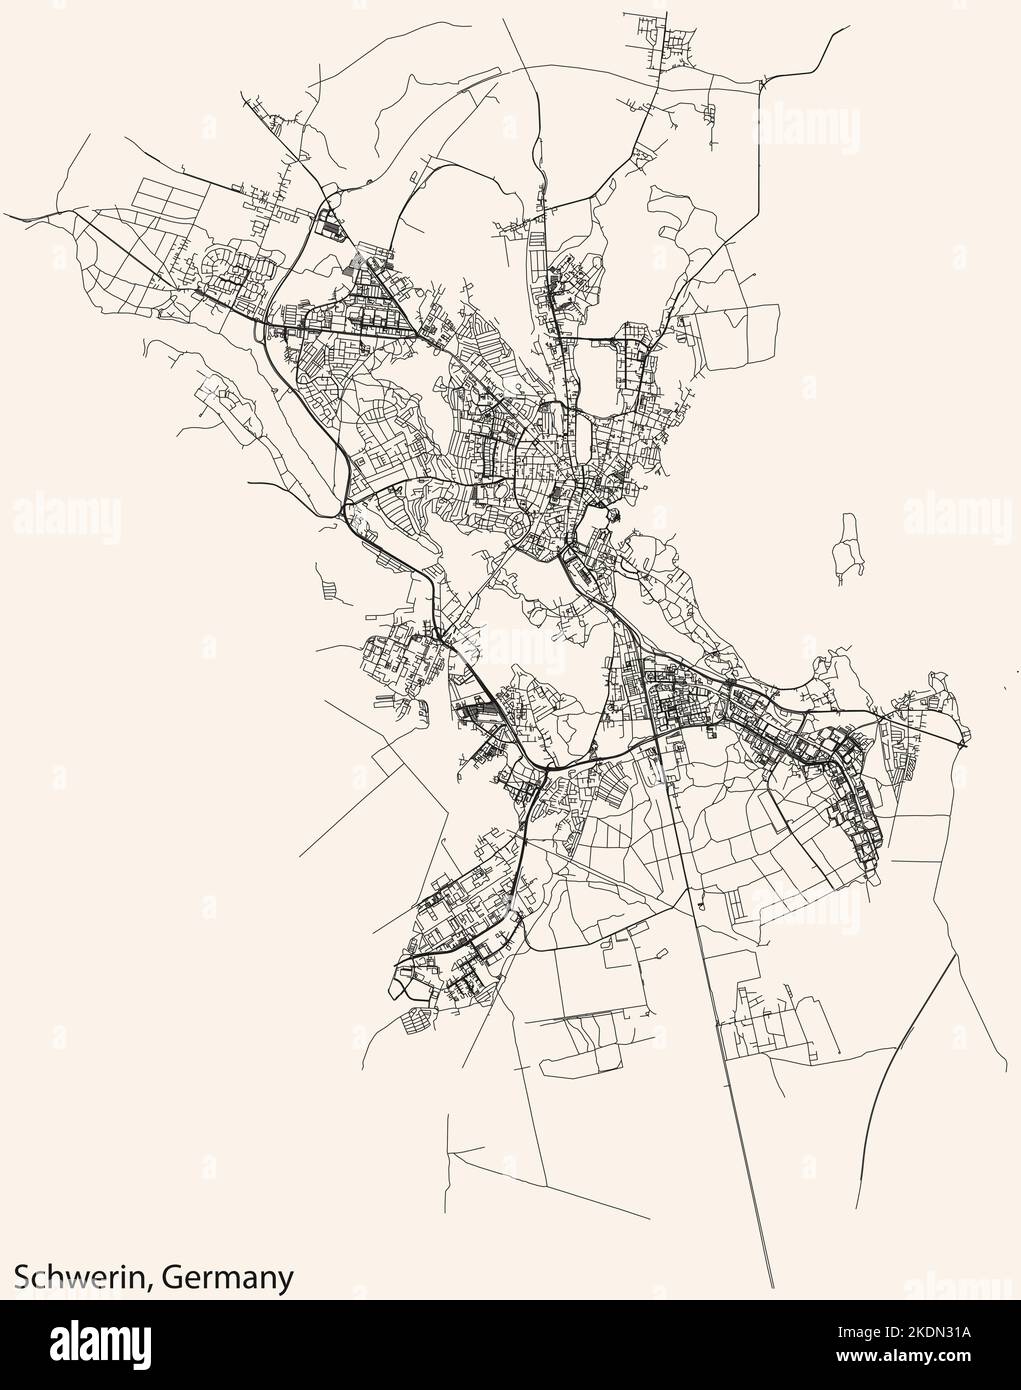 Navigation détaillée lignes noires rues urbaines carte de la capitale régionale allemande SCHWERIN, ALLEMAGNE sur fond beige vintage Illustration de Vecteur